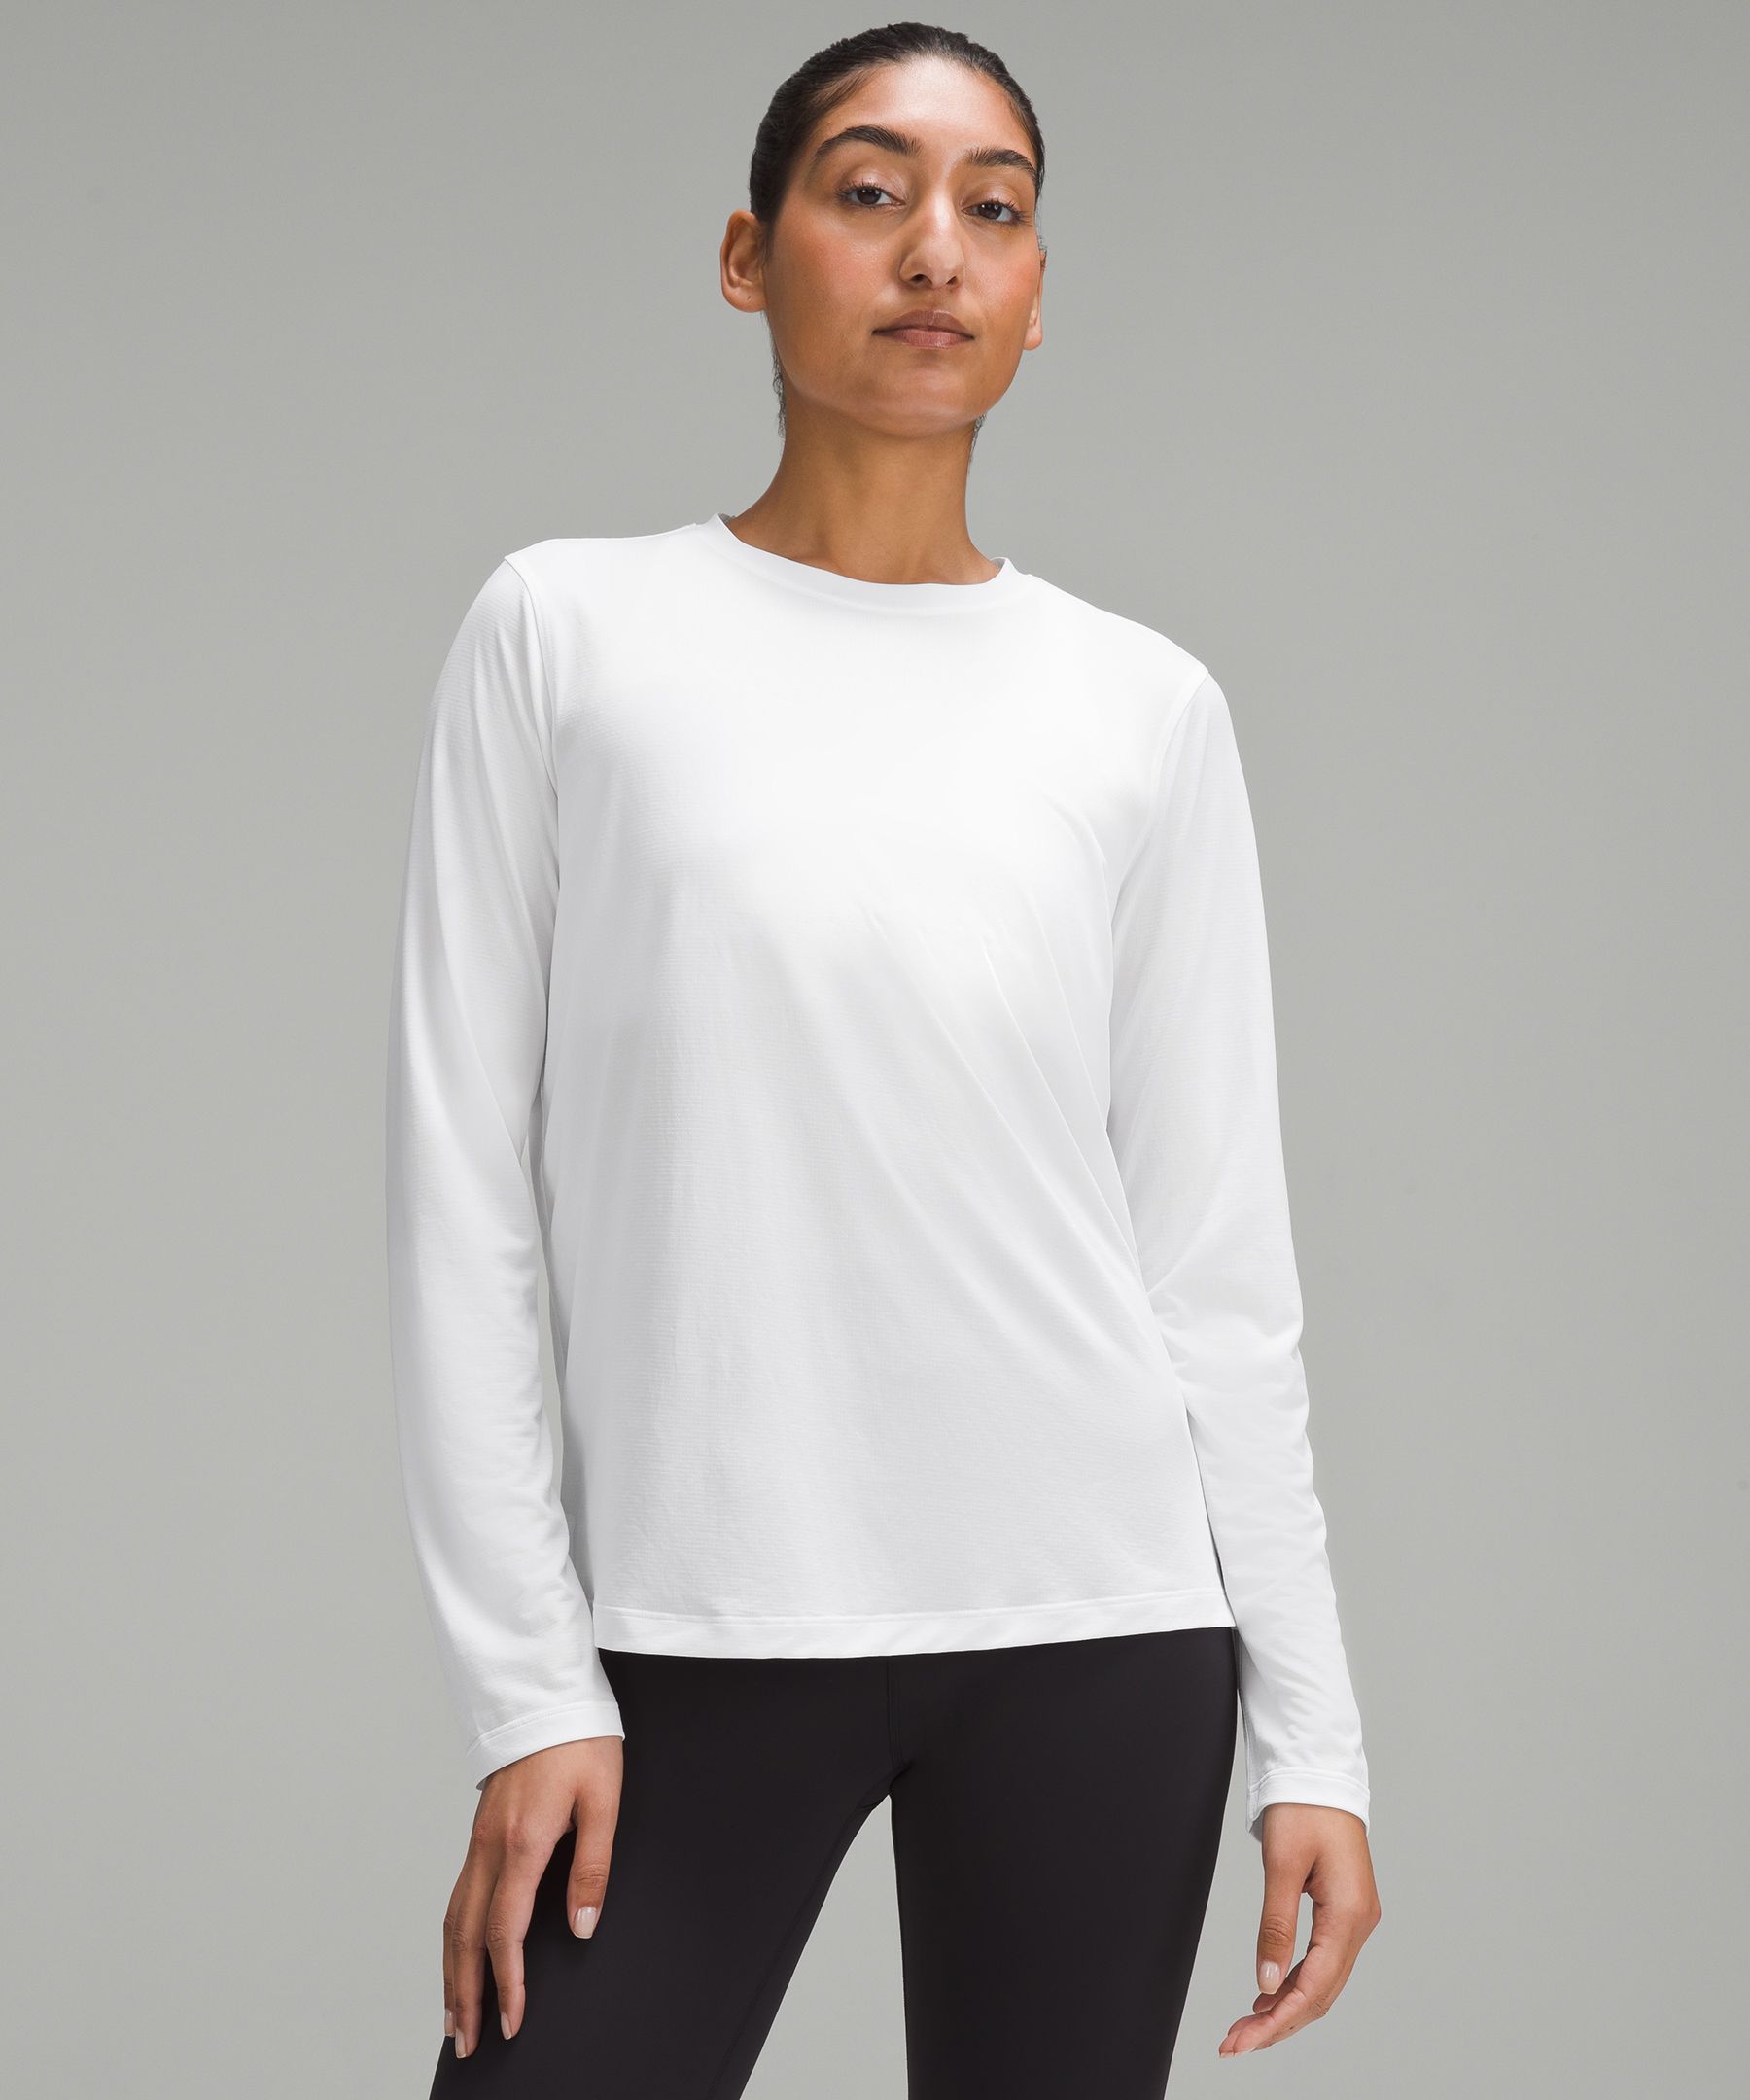 Ultralight Hip-Length Long-Sleeve Shirt